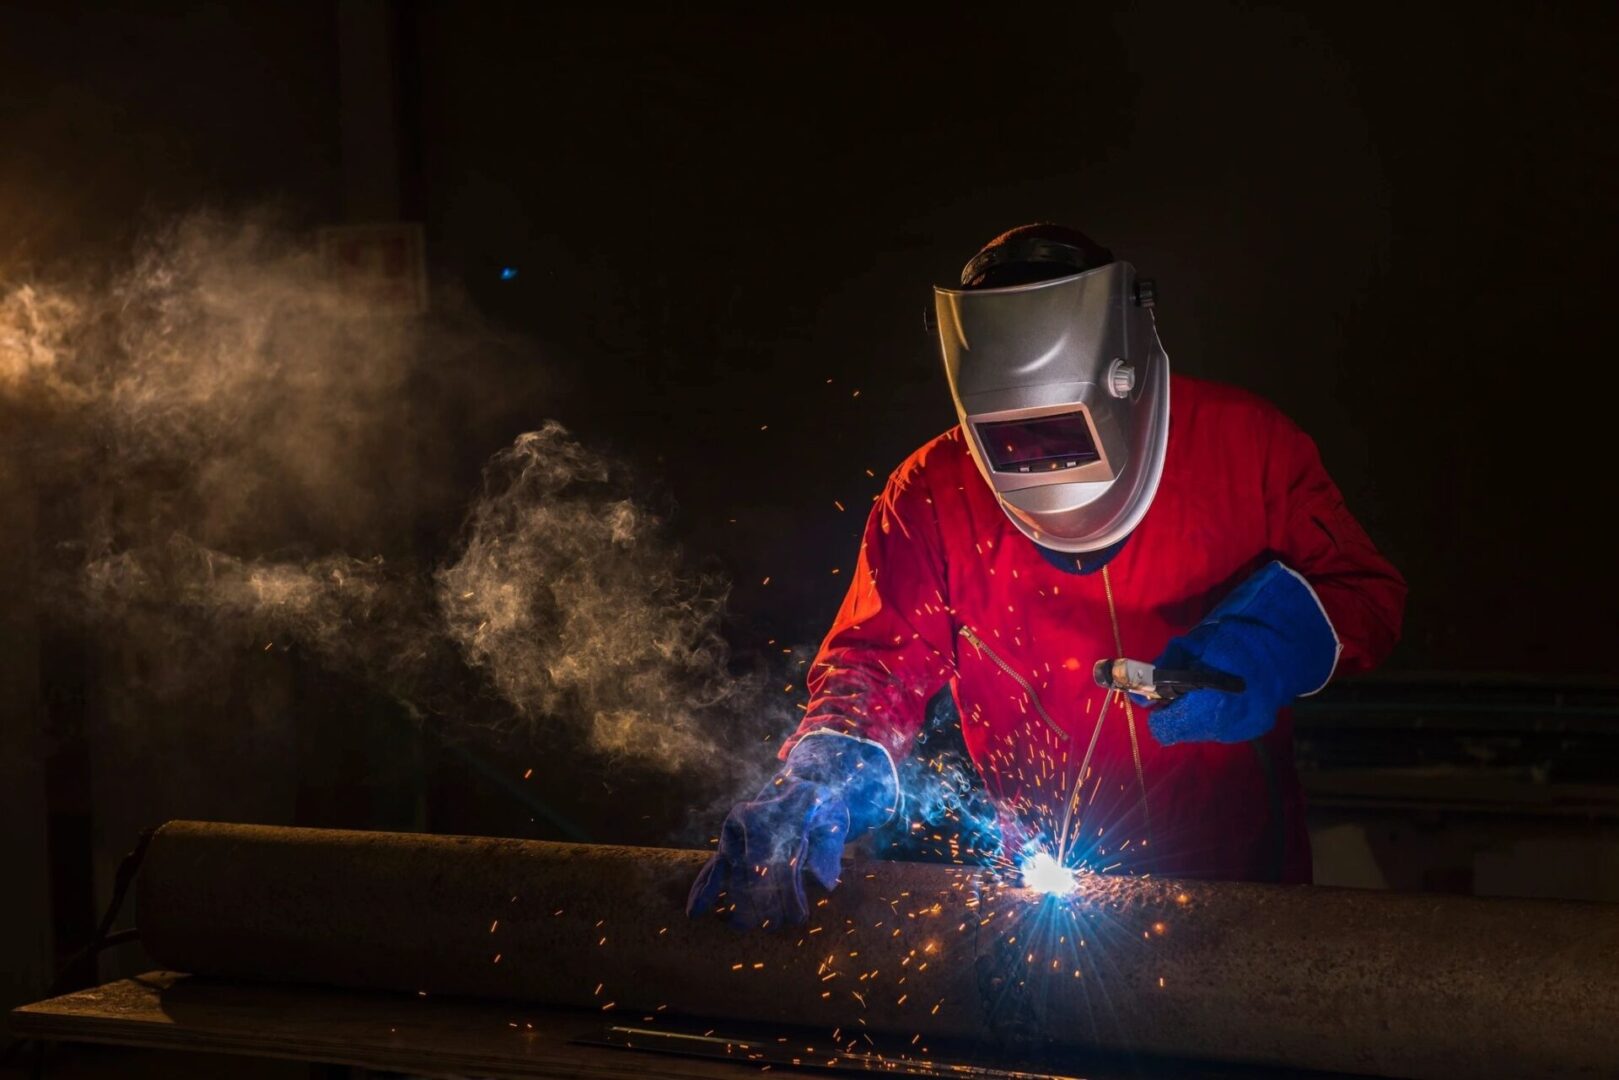 Workshop welder in Red uniform